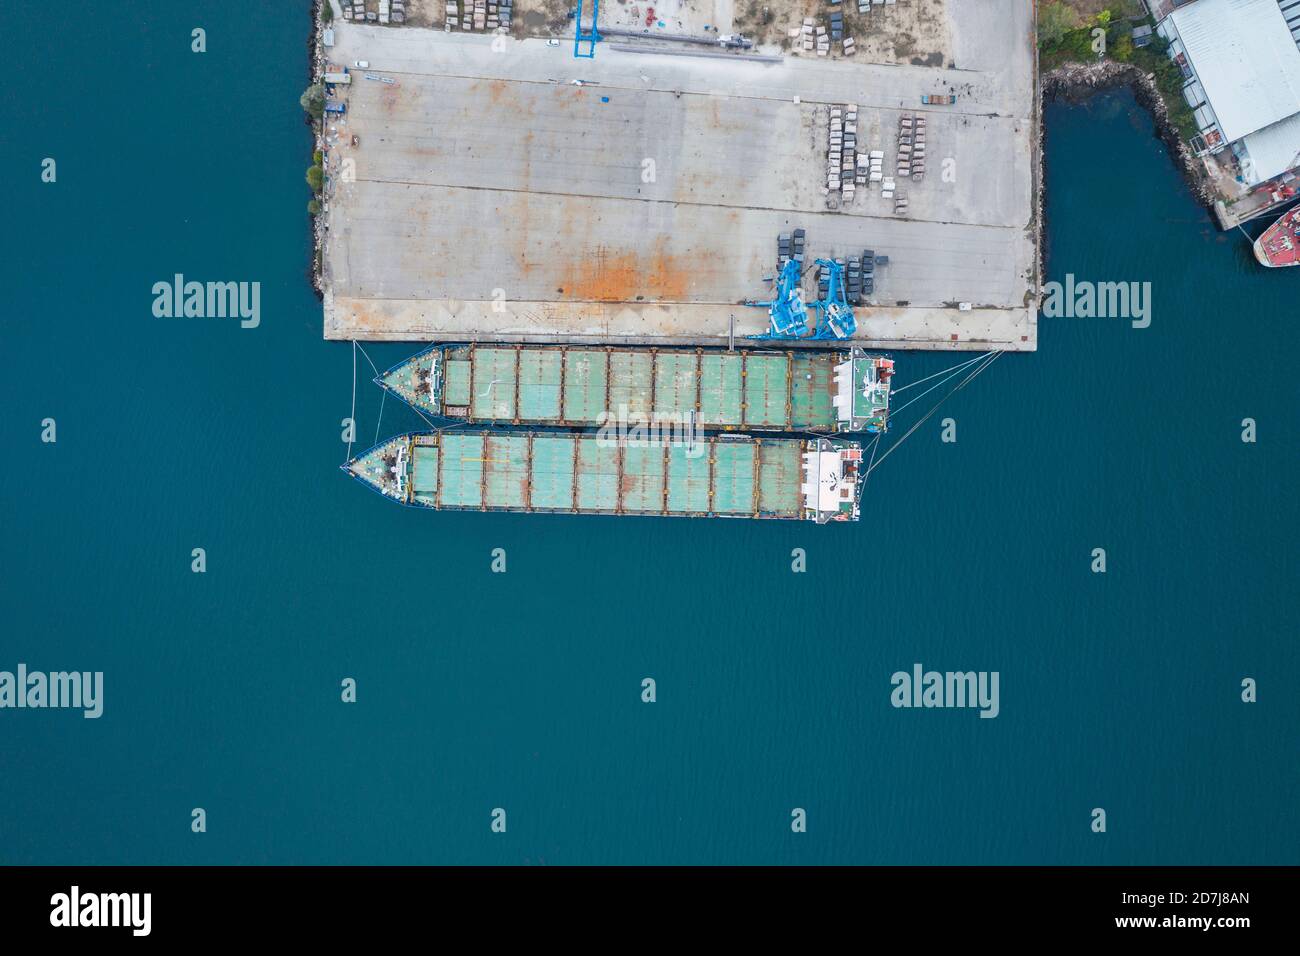 Vue de drone des navires-conteneurs amarrés par quai au port sur la mer bleue Banque D'Images